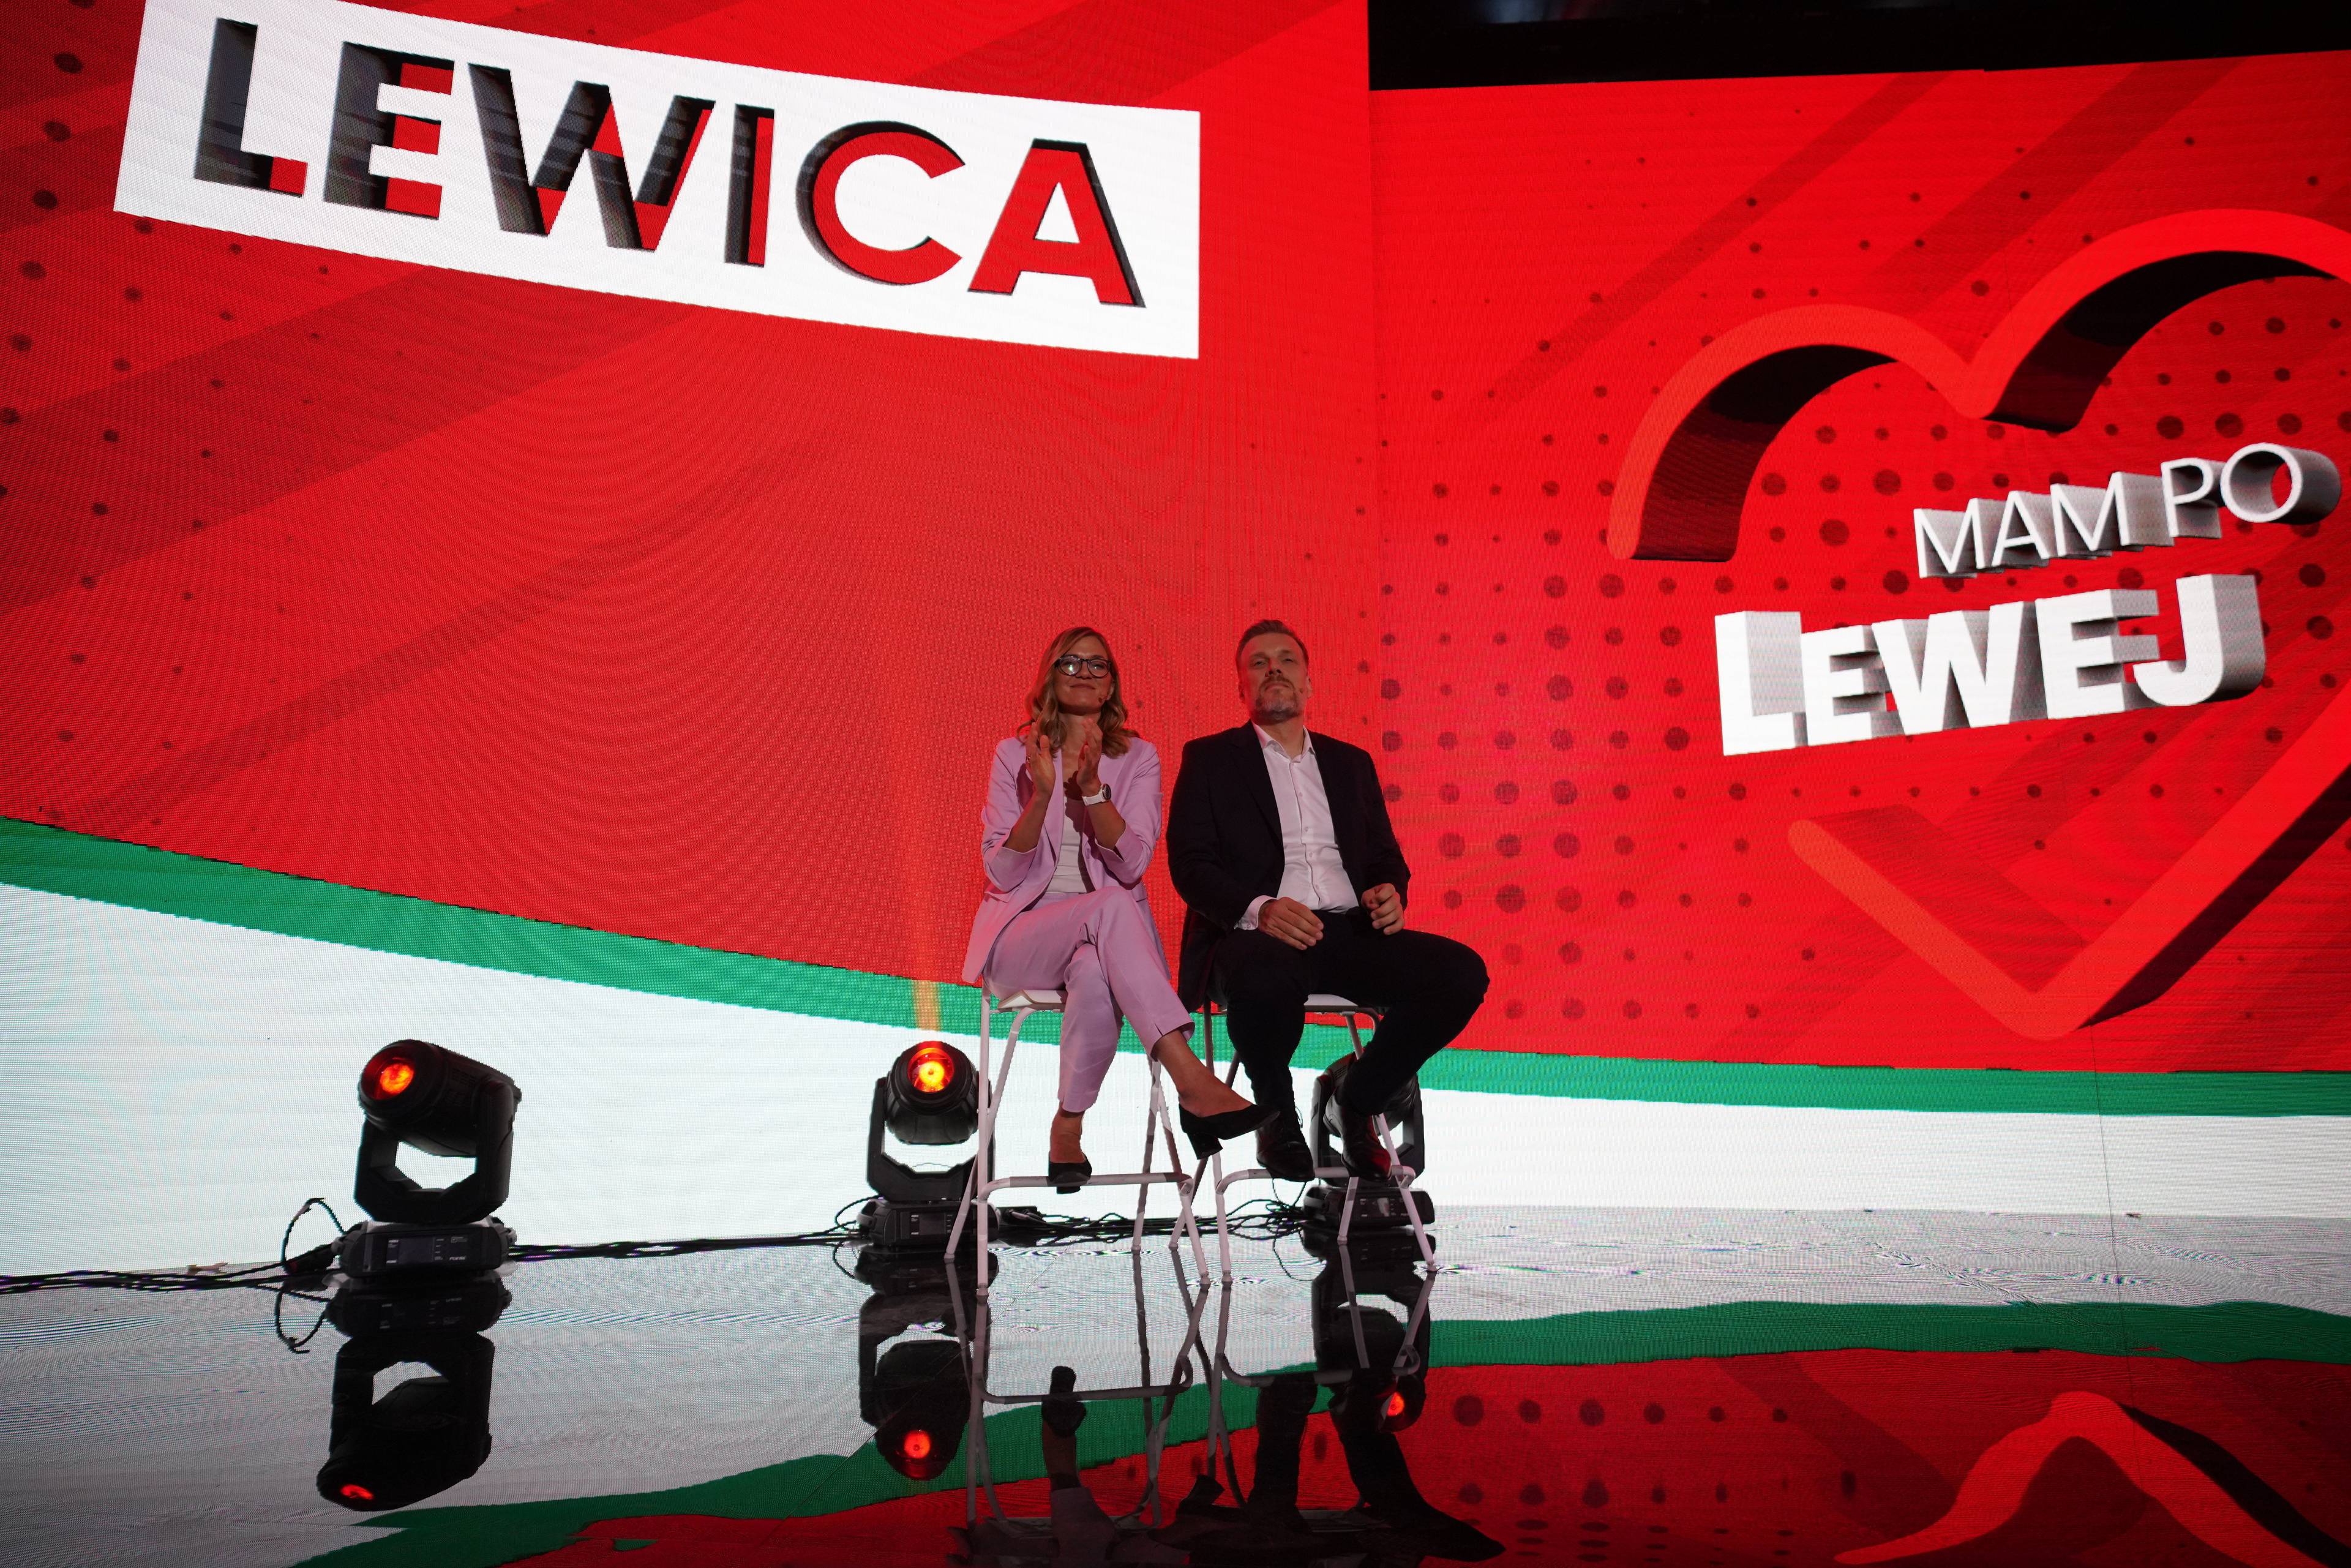 Duża scena z bardzo szerokim świecącym bannerem z napisem "Lewica" i napisem "Mam po lewej" wpisanym w serce. Na scenie dwie osoby, kobieta i mężczyzna